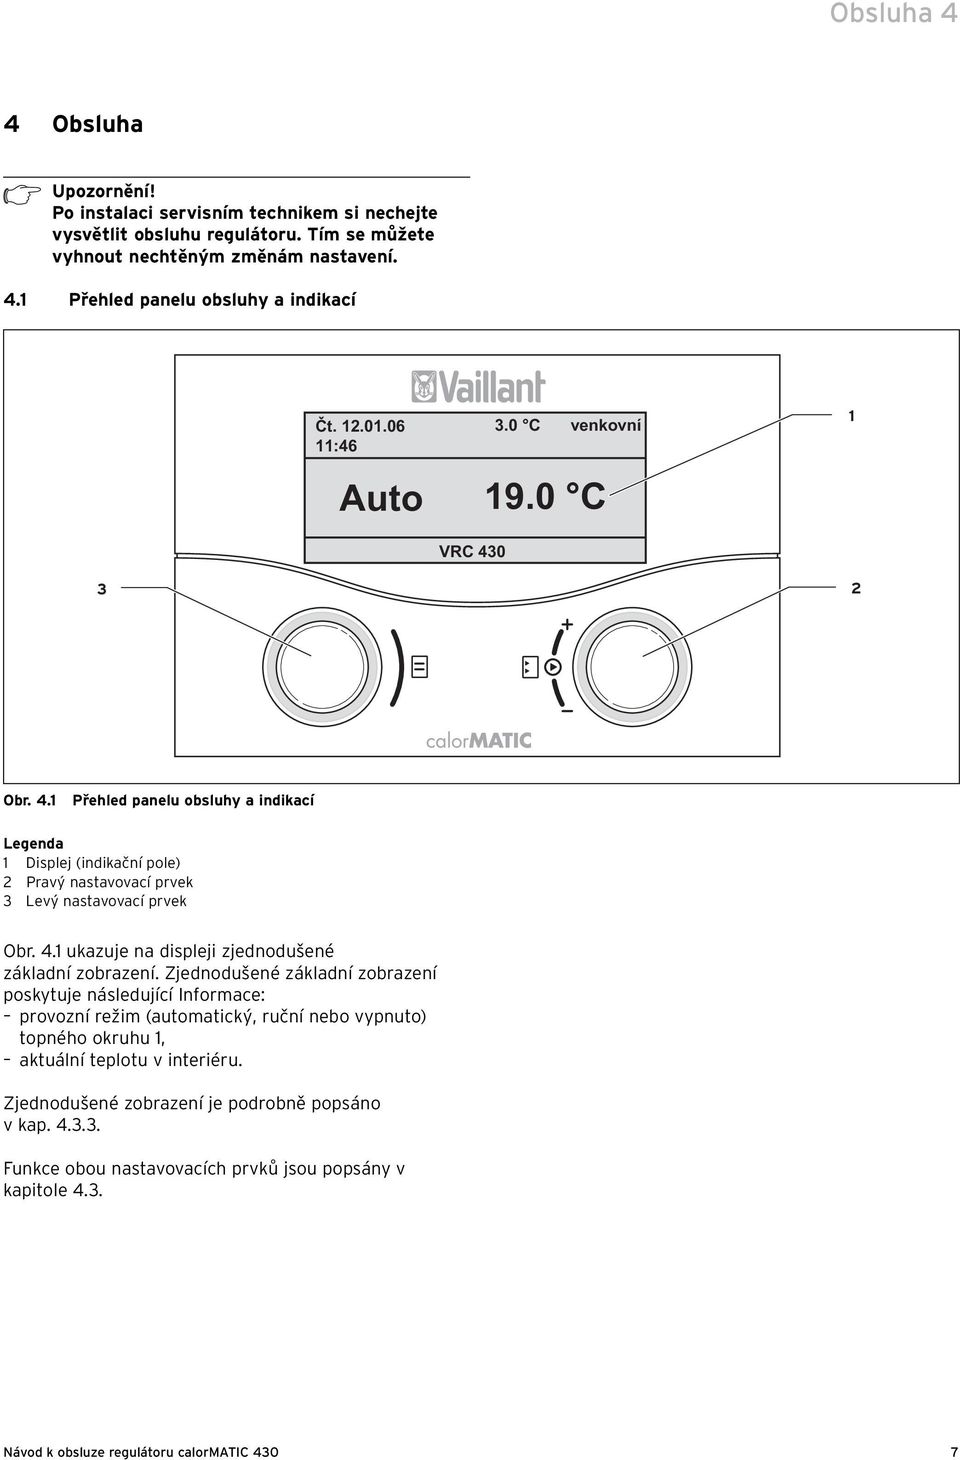 Zjednodušené základní zobrazení poskytuje následující Informace: provozní režim (automatický, ruční nebo vypnuto) topného okruhu 1, aktuální teplotu v interiéru.